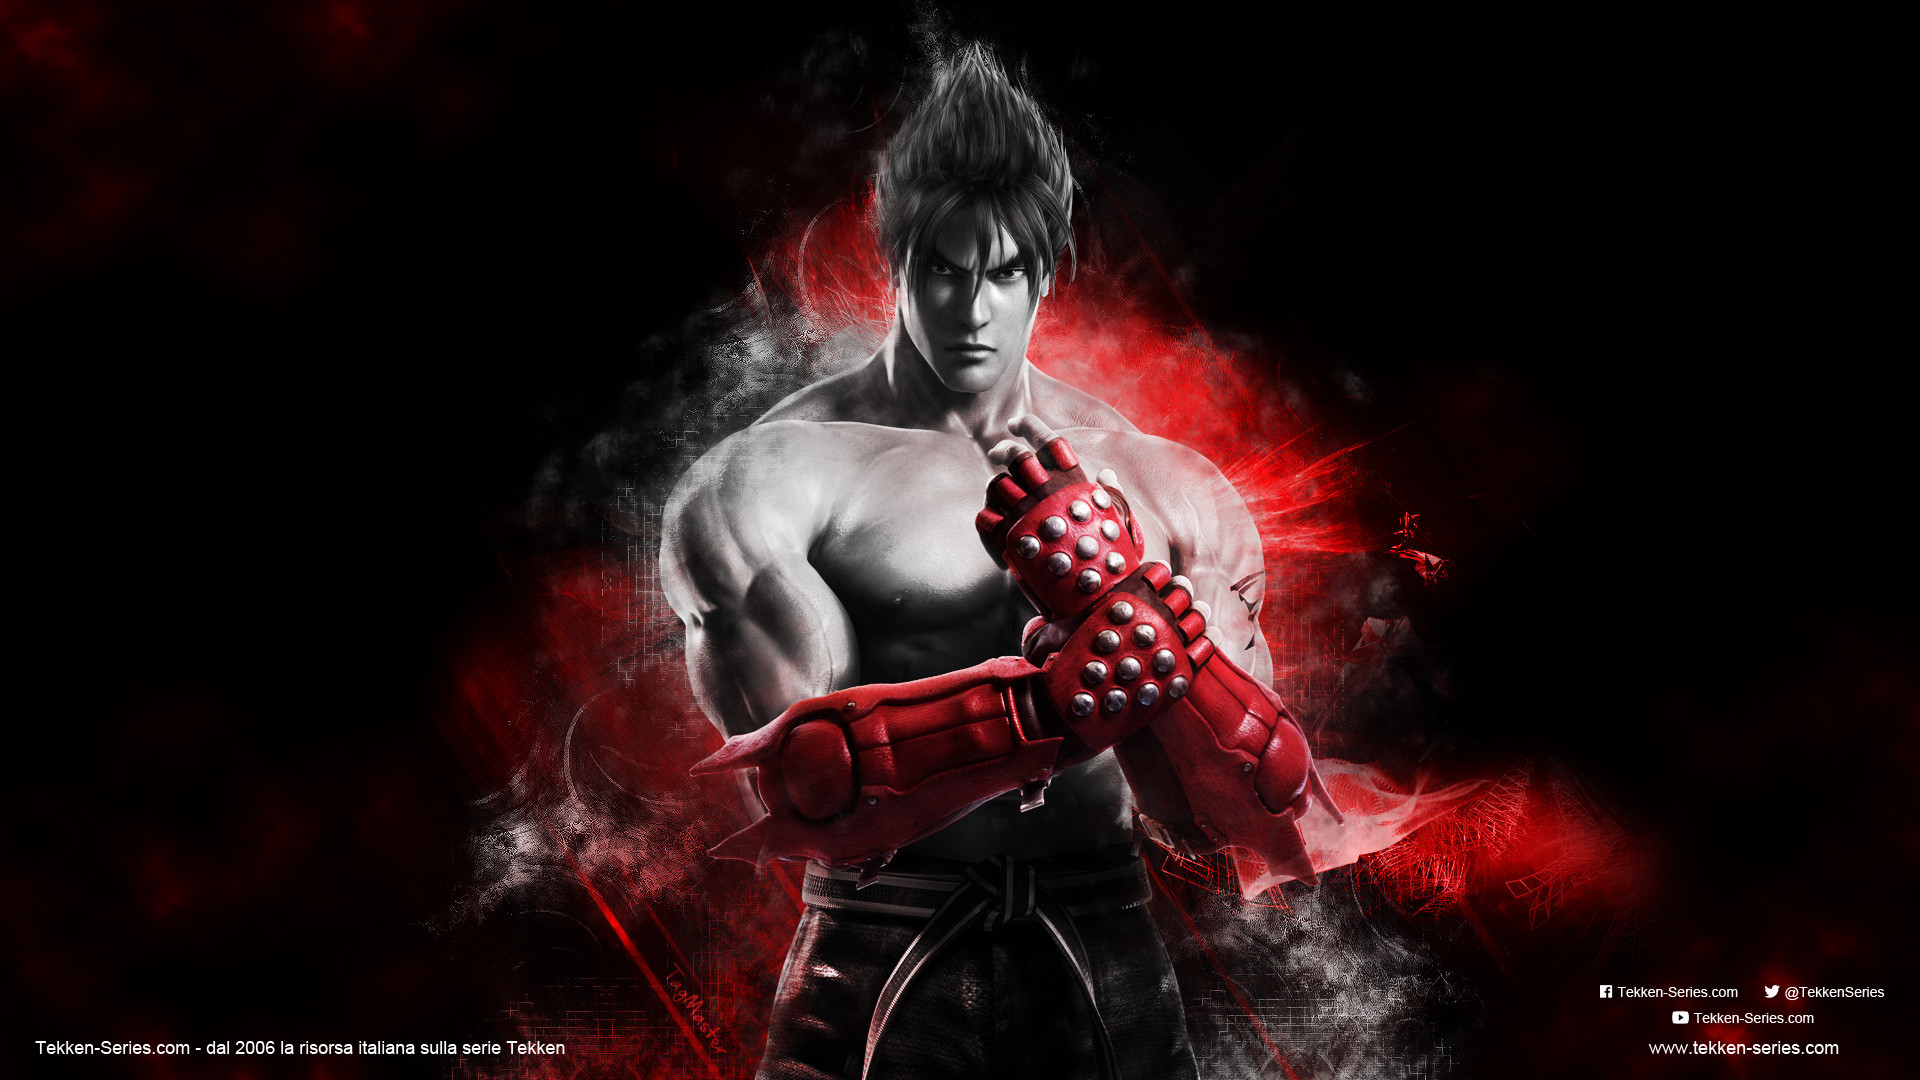 Download Tekken 7 Jin Kazama Hd Wallpaper 1920x1080 J - vrogue.co